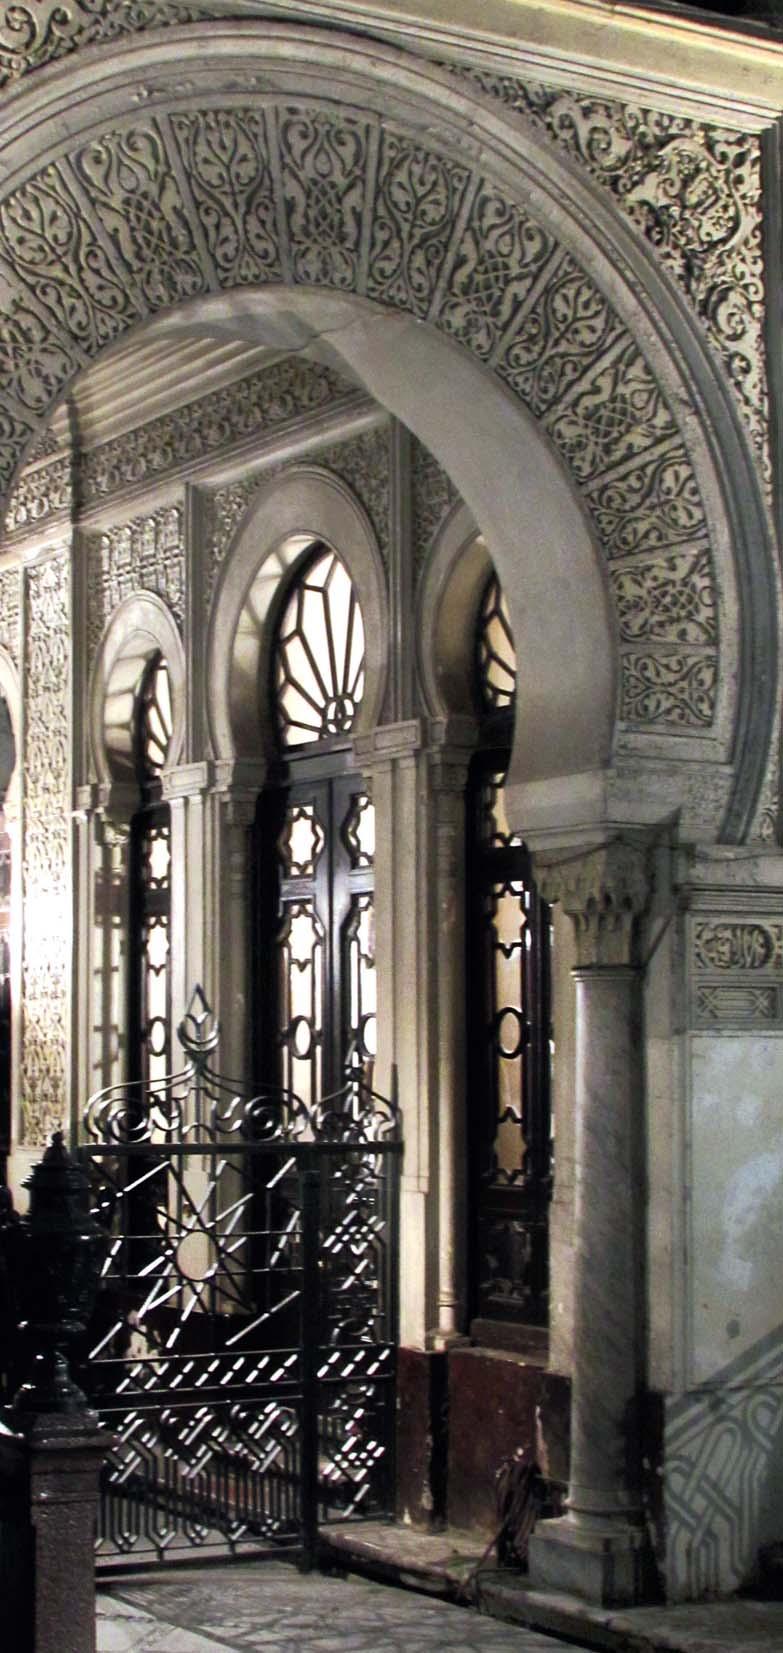 AL APRECIAR sus espacios interiores, destacan arcos de herradura de estilo califal cordobés, mosaicos islámicos, jarrones y ventanas ojivales que dan cuenta del estilo morisco que define su